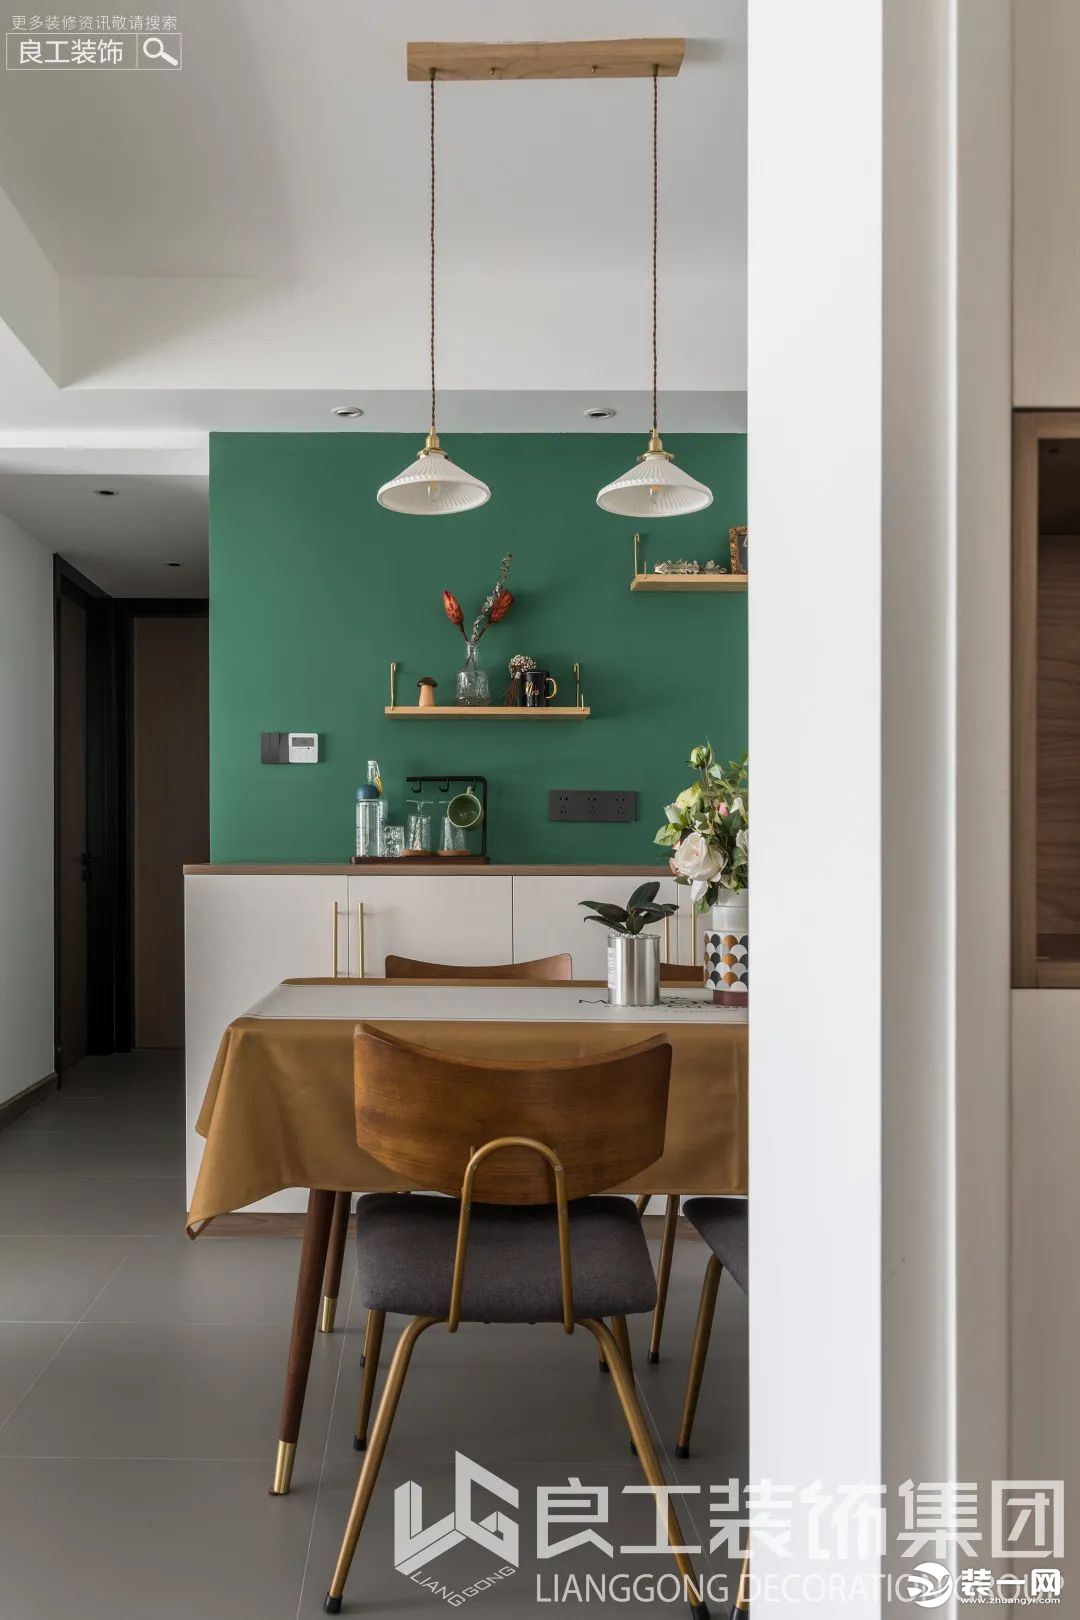 设计师精心挑选的莫兰迪绿色上墙后，与客厅的森林绿彼此呼应